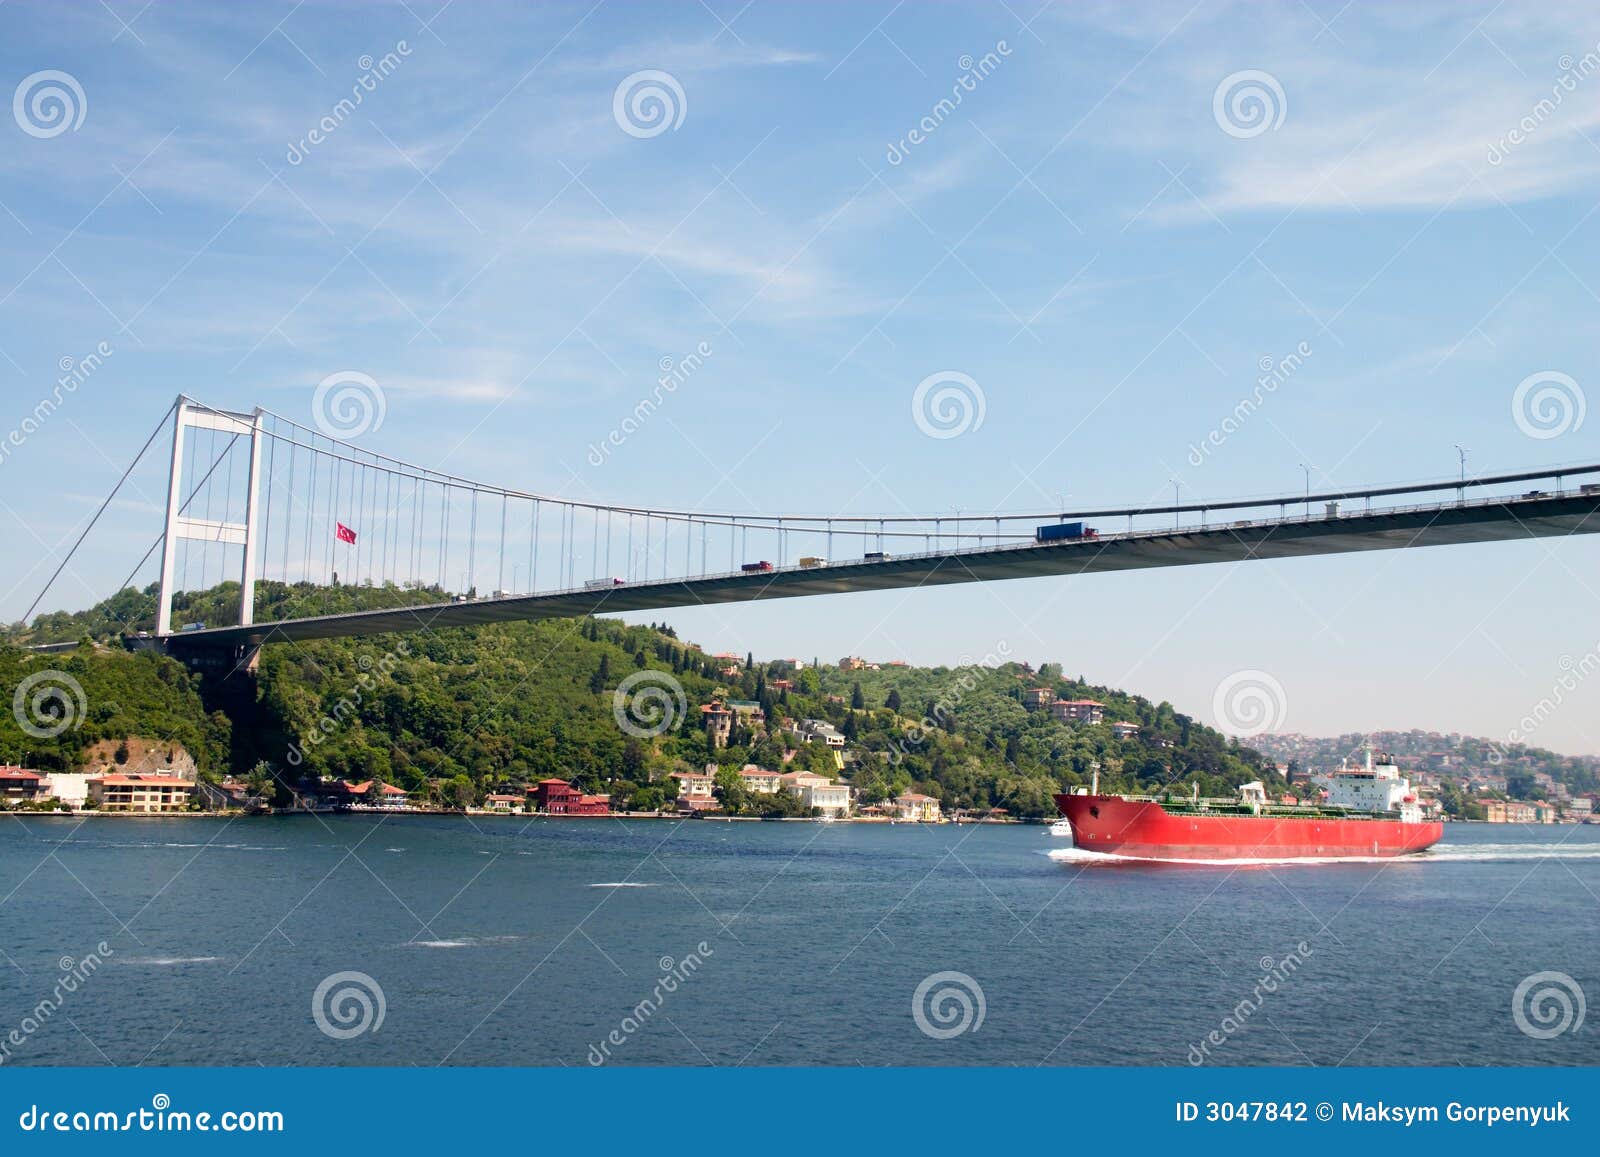 bridge over bosporus strait